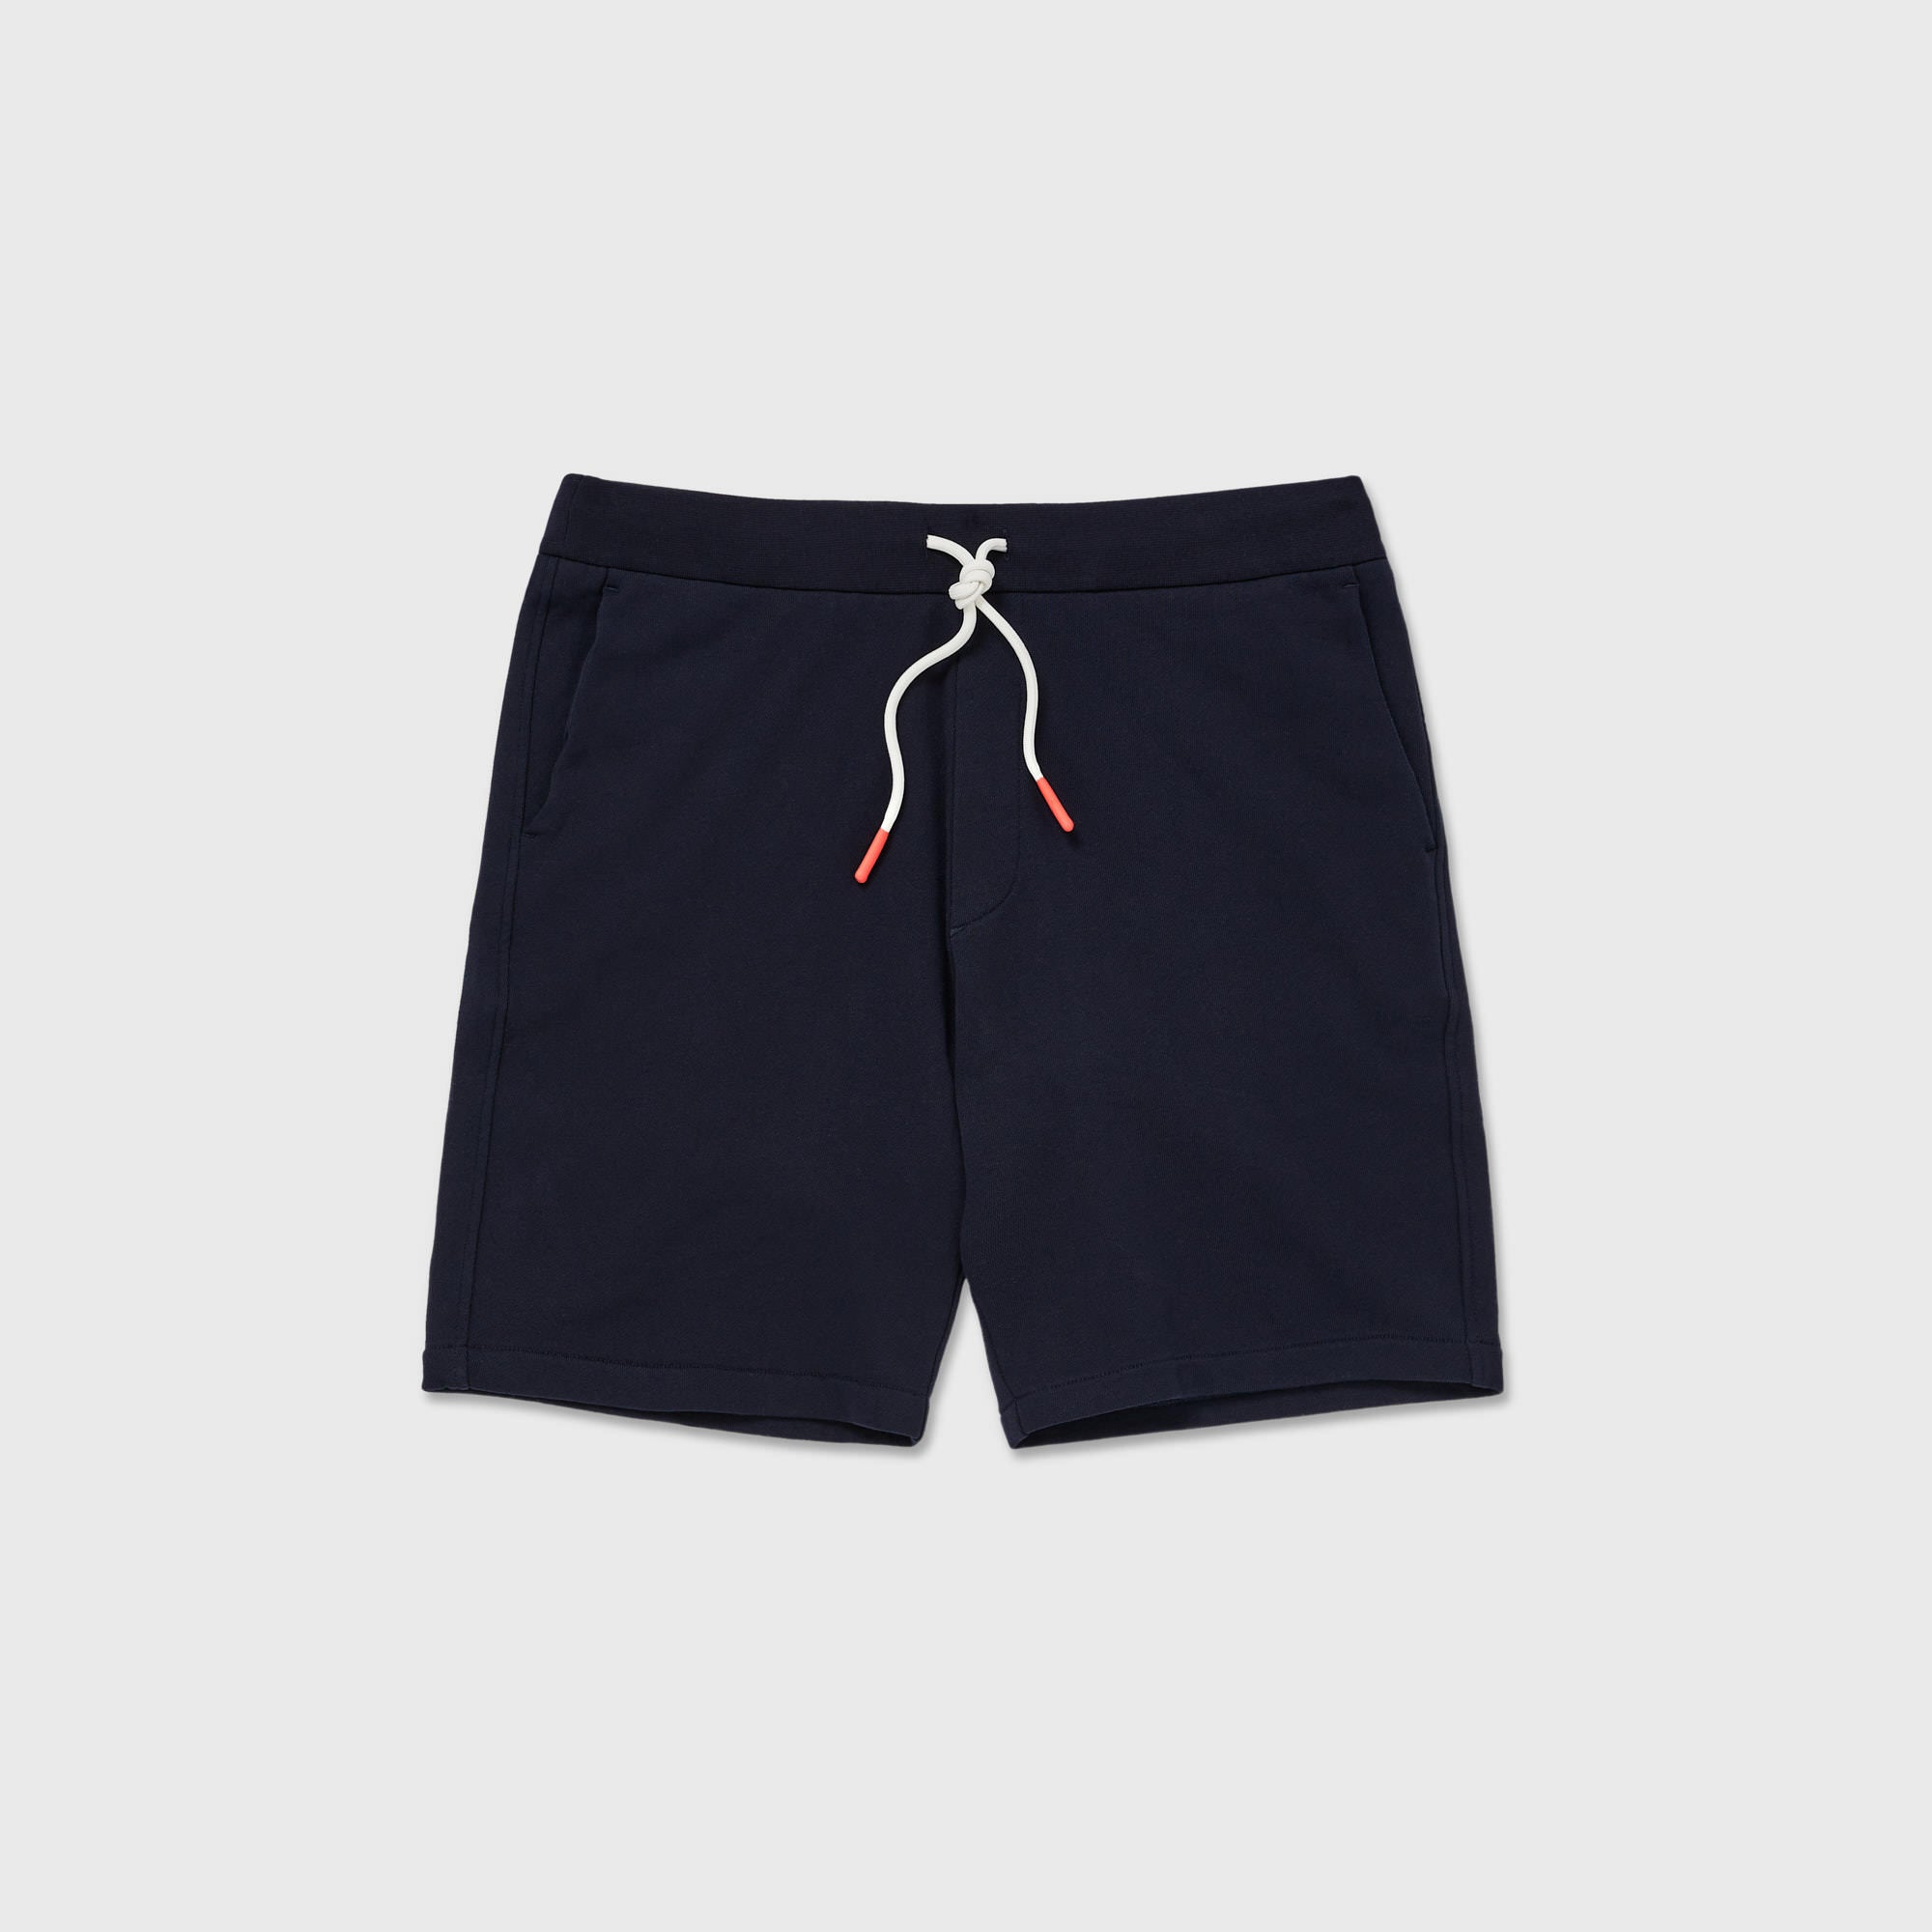 SPOKE House Shorts - Dark Navy Custom Fit Shorts - SPOKE